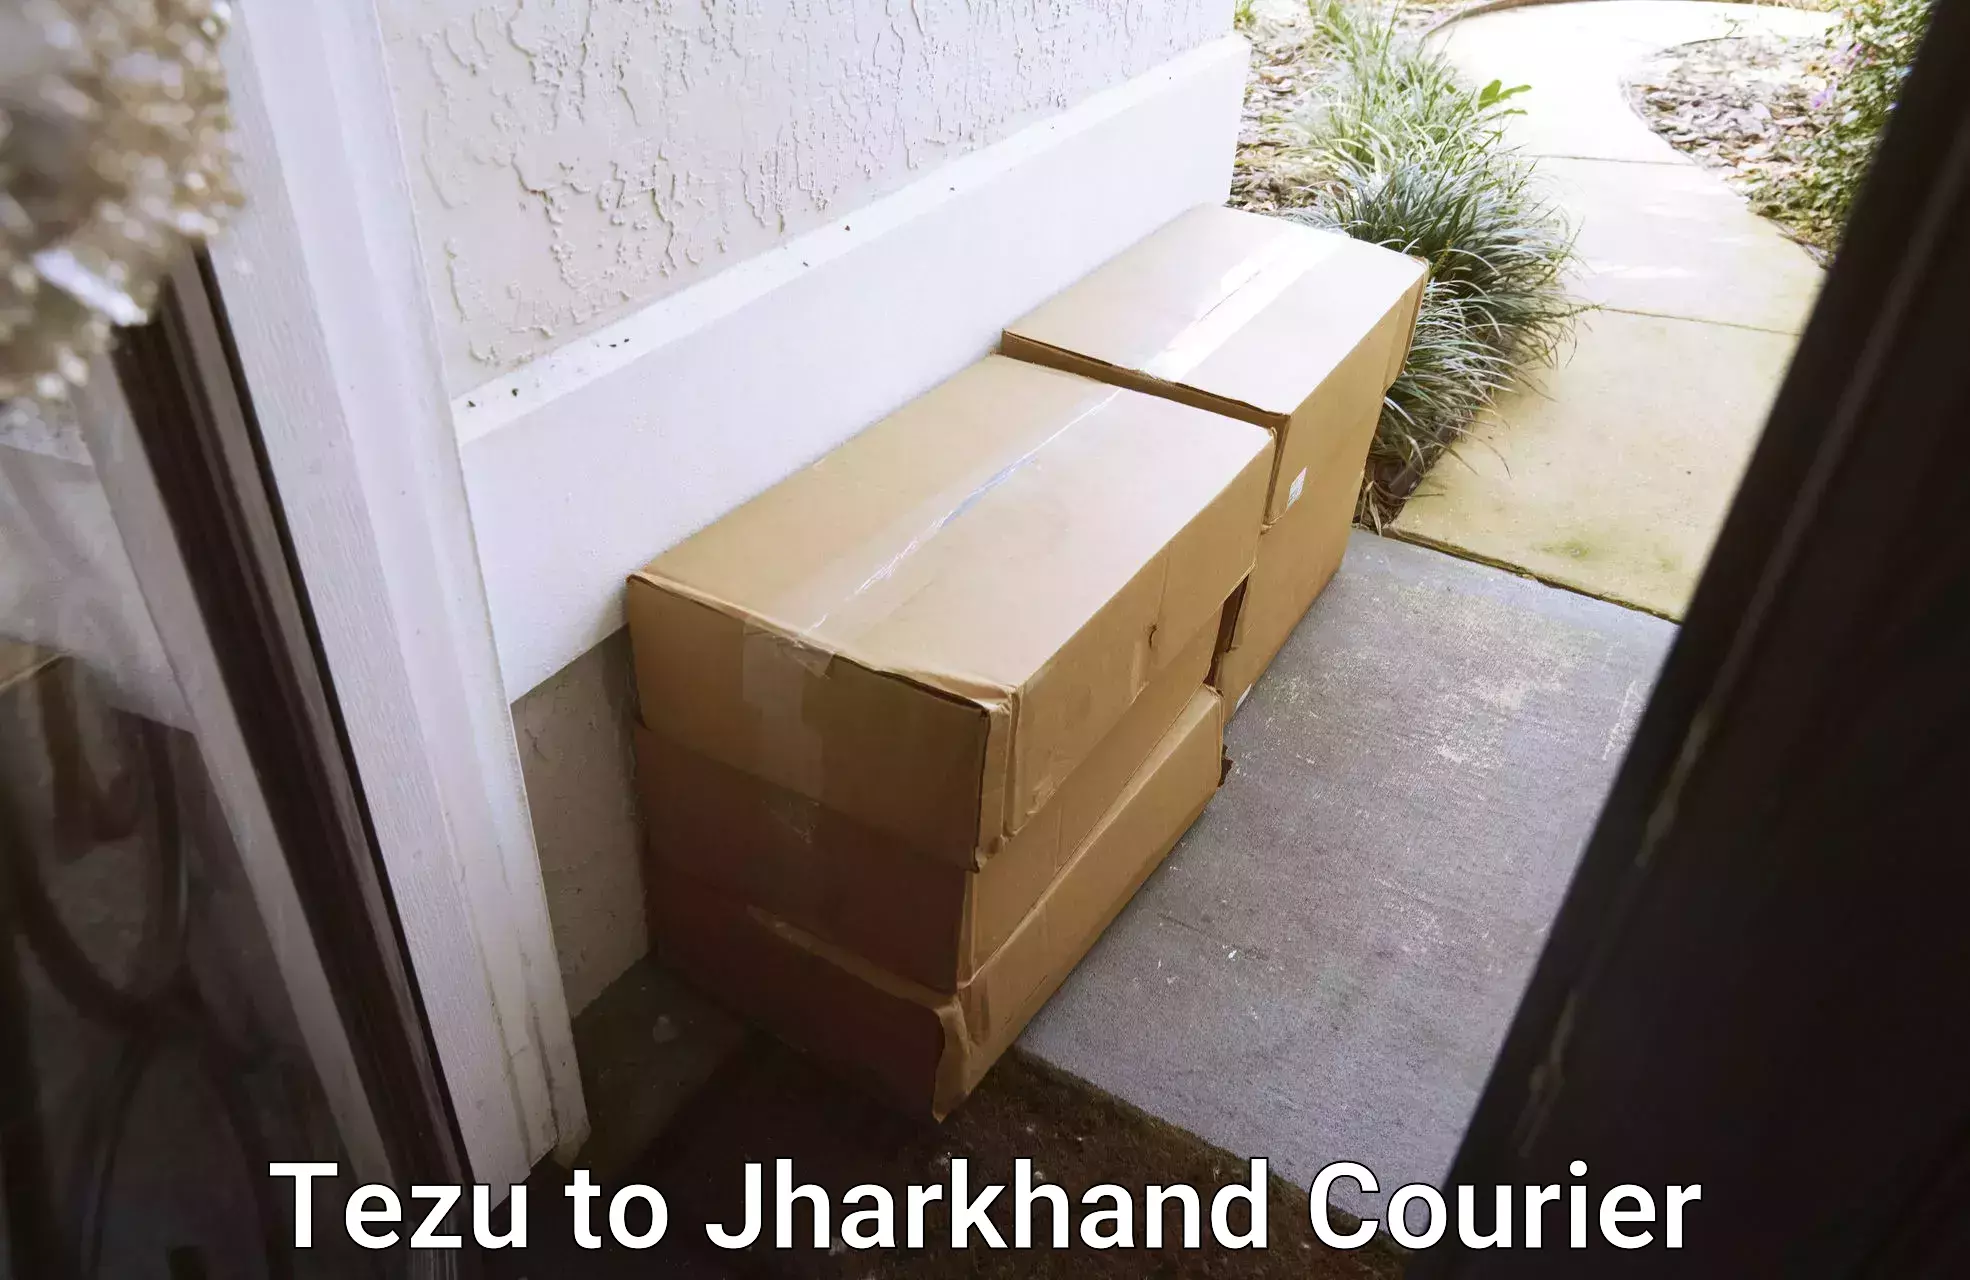 Lightweight parcel options Tezu to Jharkhand